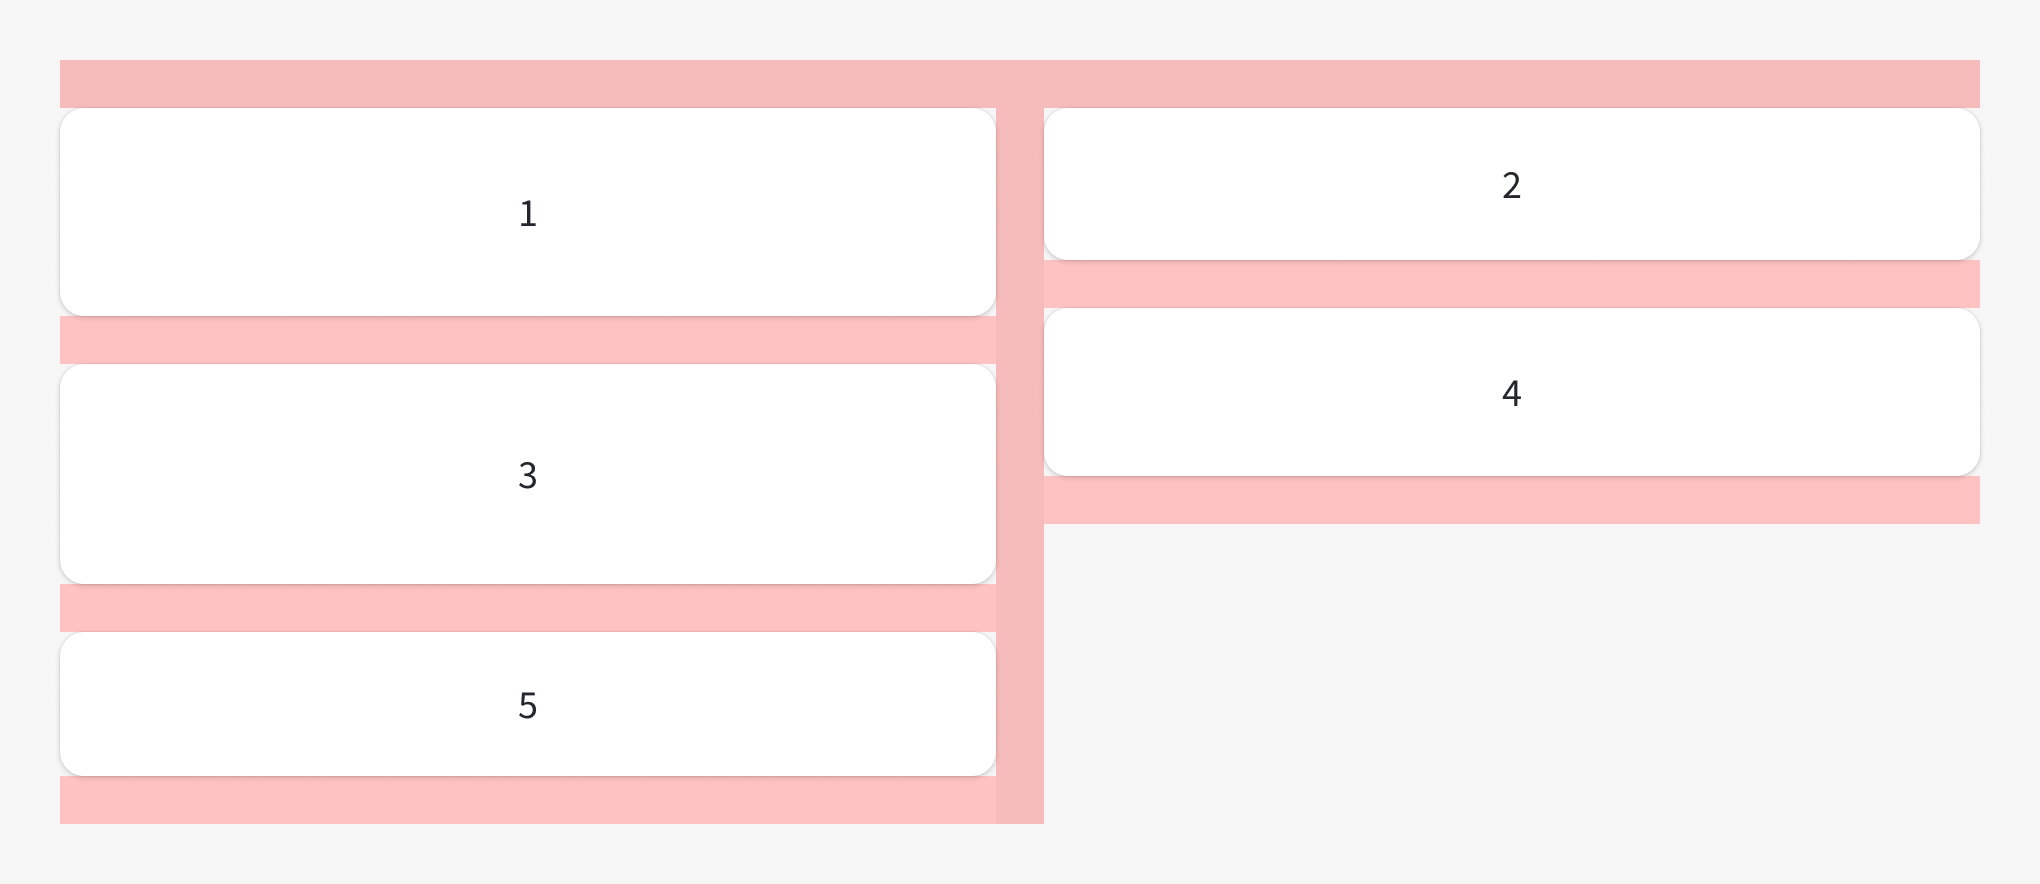 Fem hvite, nummererte kort (fra 1-5) lagt i et muroppsett. Kortene er like brede, men har variert høyde. Avstanden mellom alle kortene er den samme. 